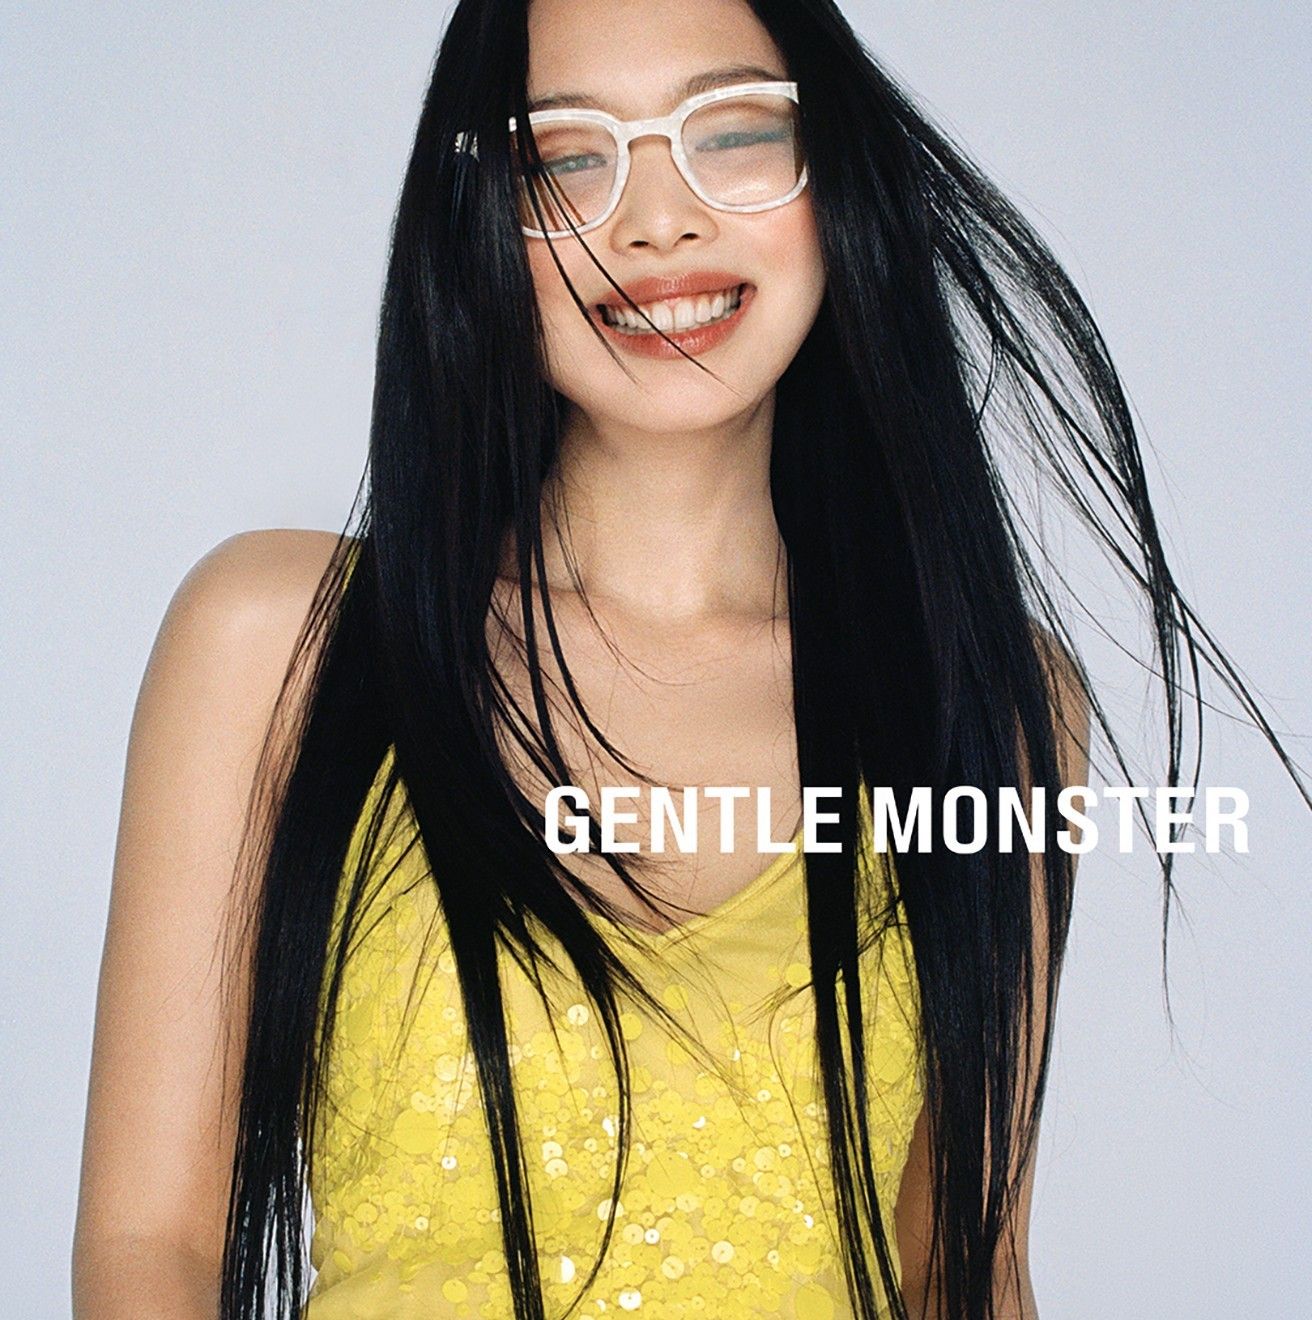 Gentle Monster X Jennie Angel GC3 Jentle Garden BLACKPINK Glasses